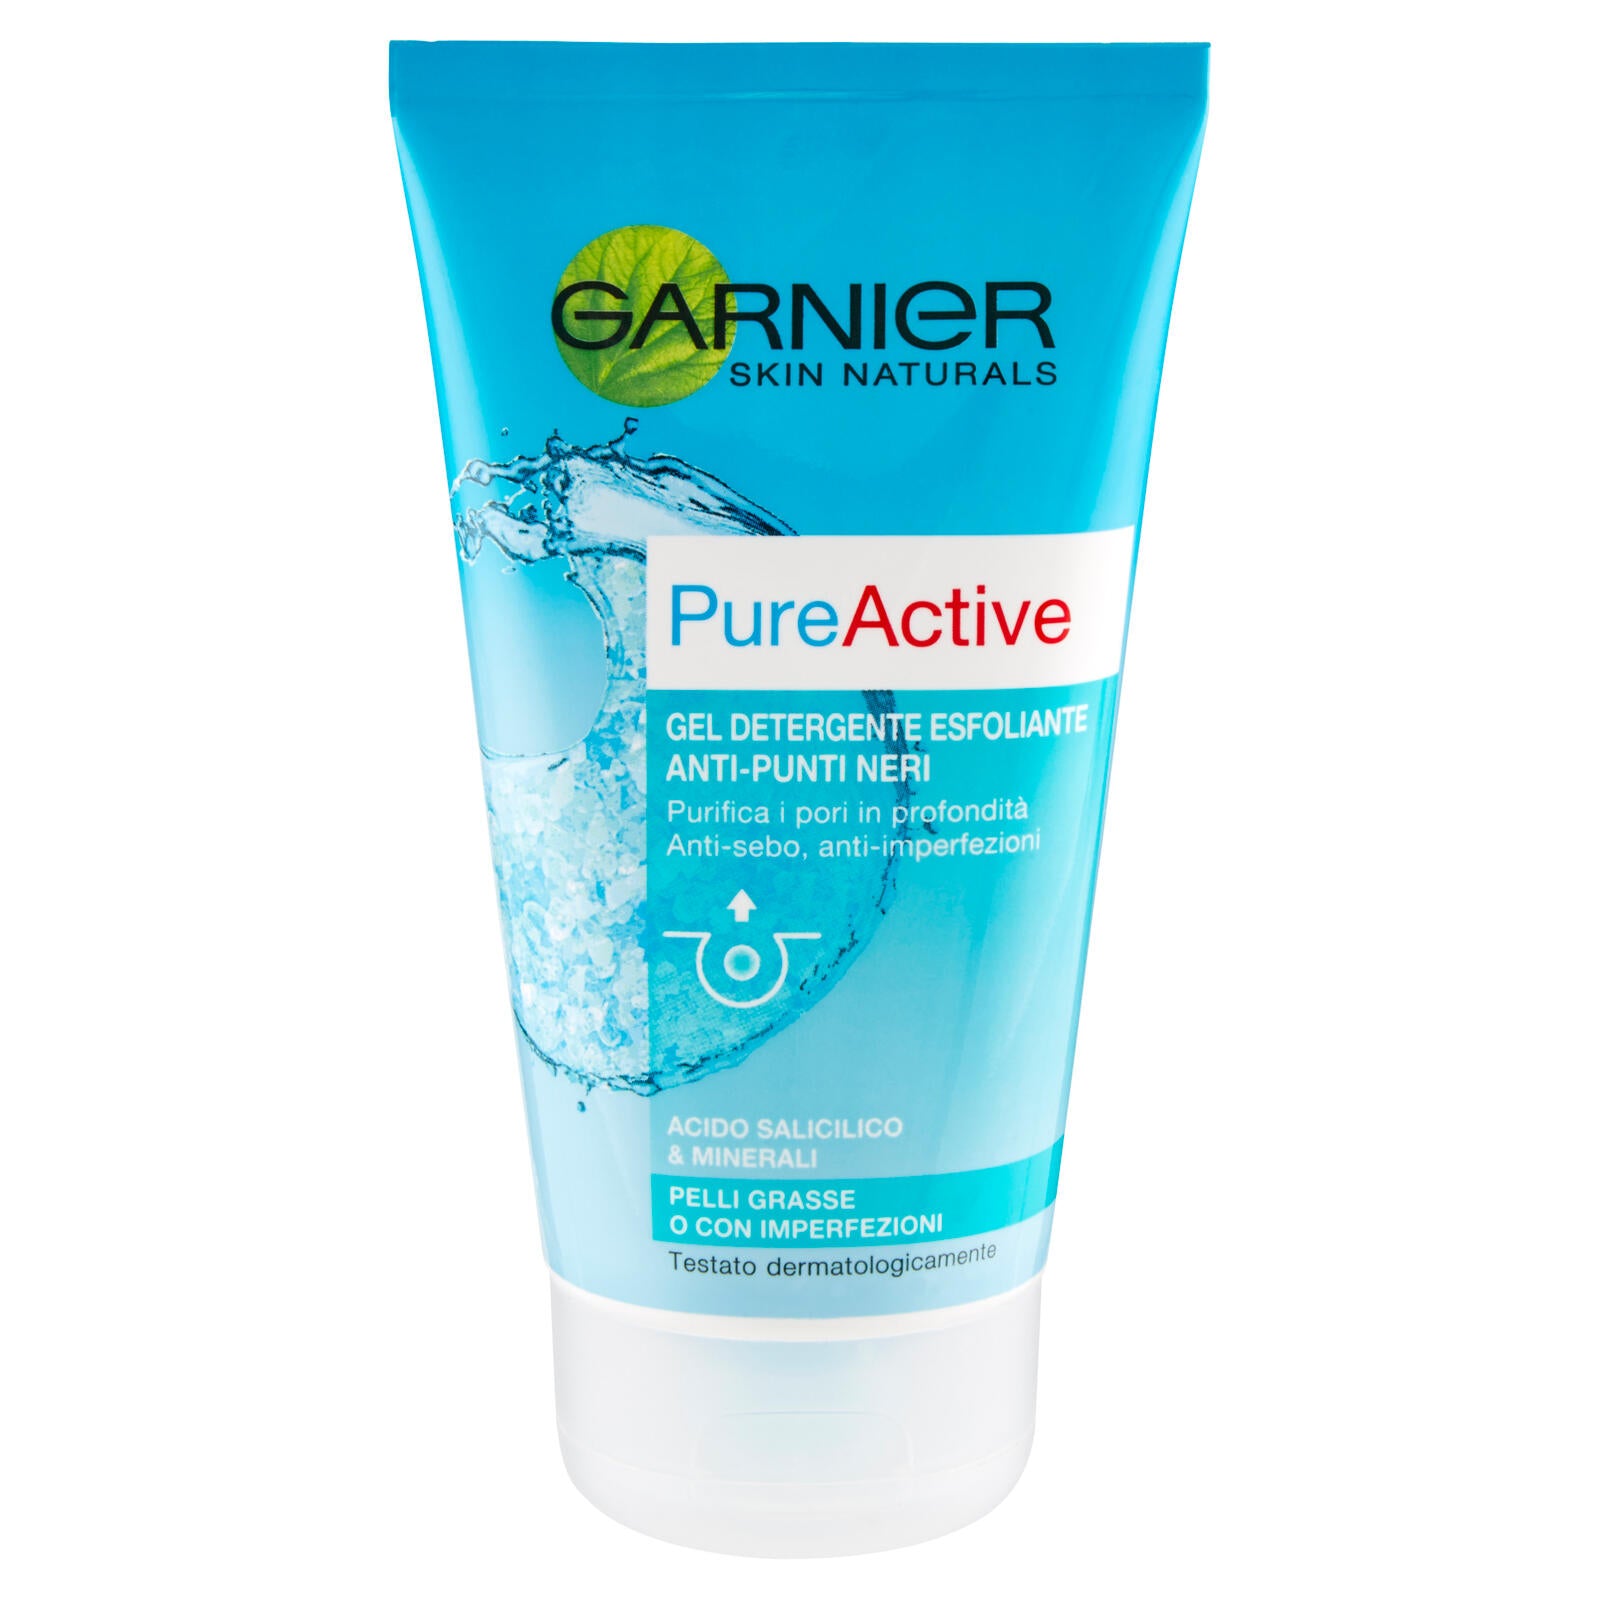 Garnier Skin Naturals PureActive Gel detergente esfoliante anti-punti neri 150 ml